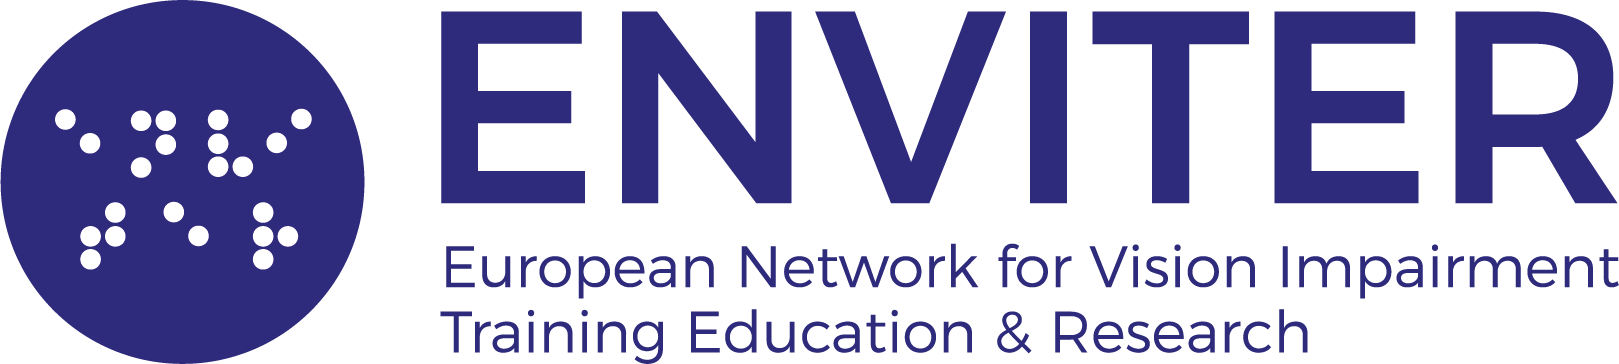 ENVITER logo